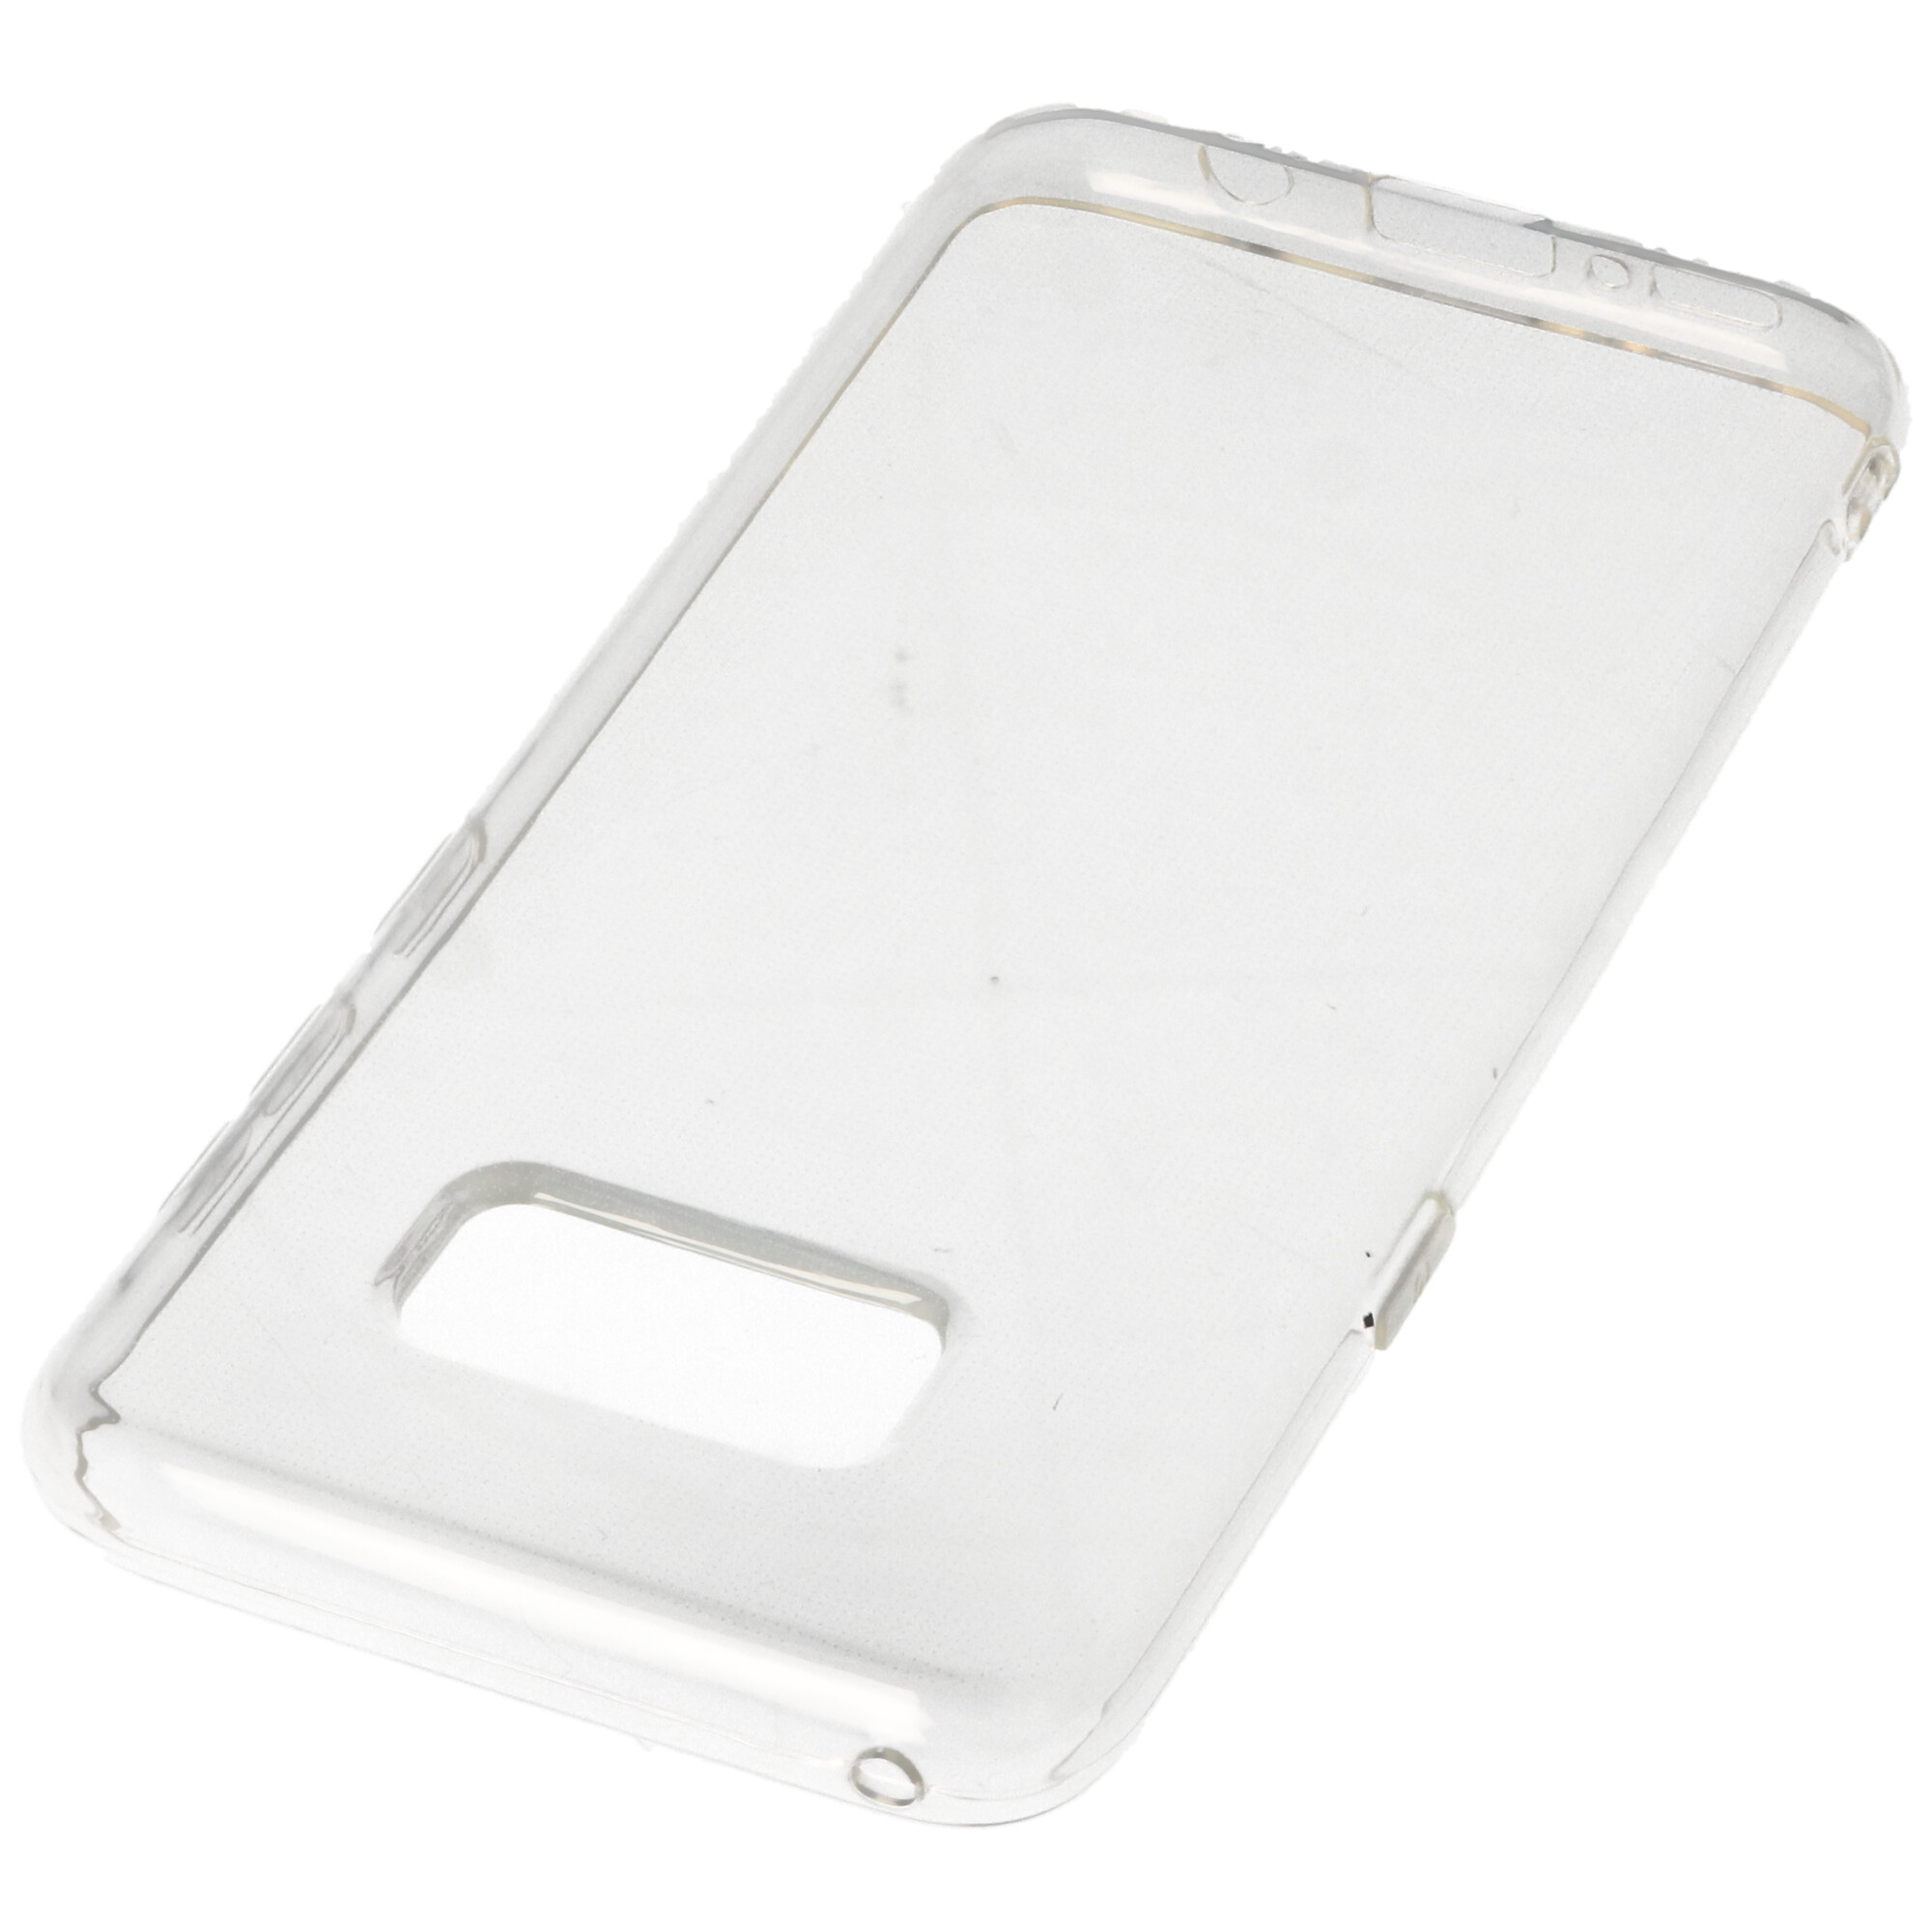 Hülle passend für Samsung Galaxy S8 - transparente Schutzhülle, Anti-Gelb Luftkissen Fallschutz Silikon Handyhülle robustes TPU Case